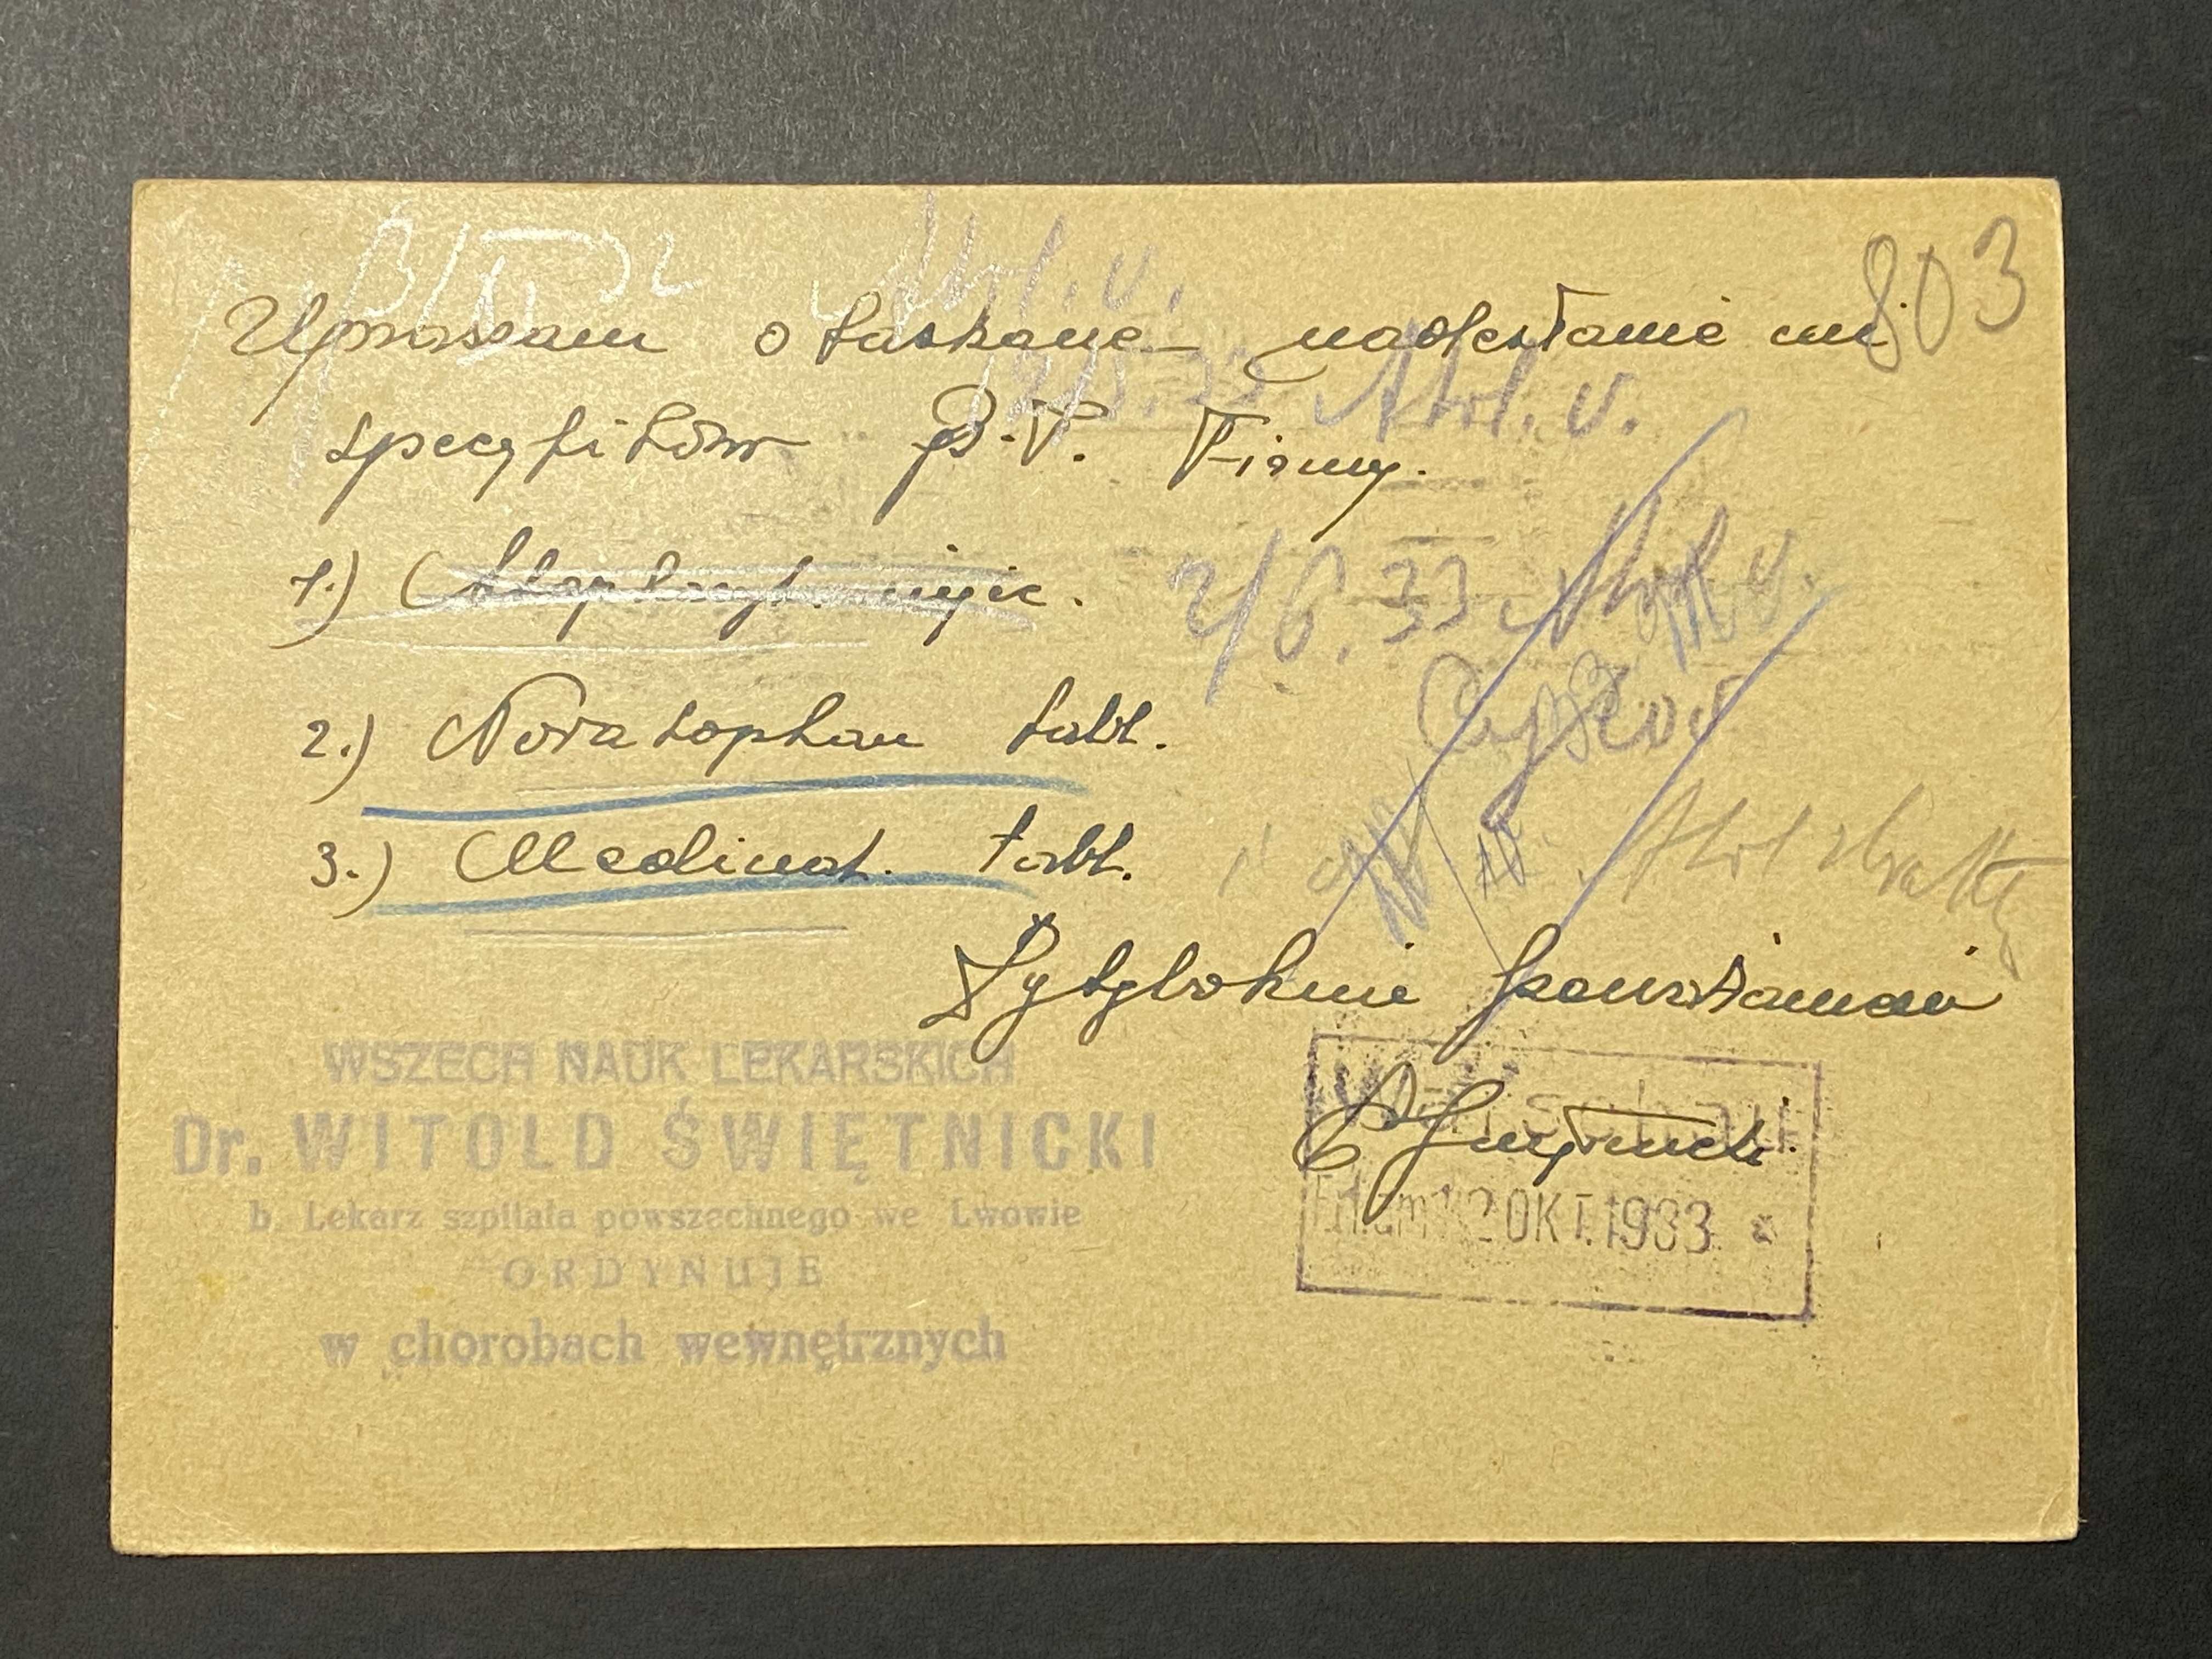 Kartka pocztowa polska międzywojenna Cp 51 kasowana